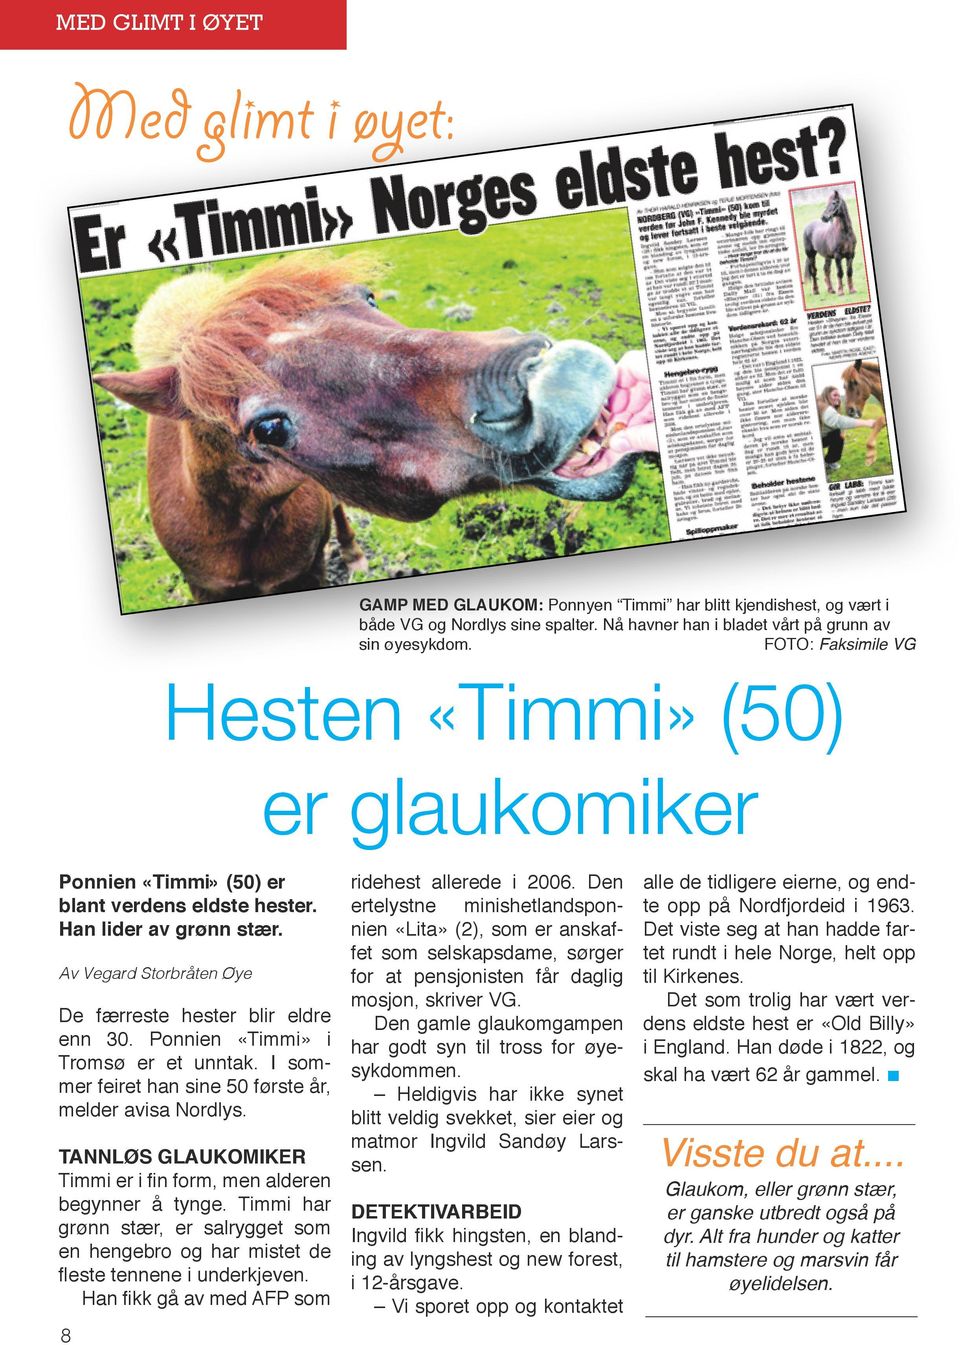 Ponnien «Timmi» i Tromsø er et unntak. I sommer feiret han sine 50 første år, melder avisa Nordlys. TANNLØS GLAUKOMIKER Timmi er i fin form, men alderen begynner å tynge.